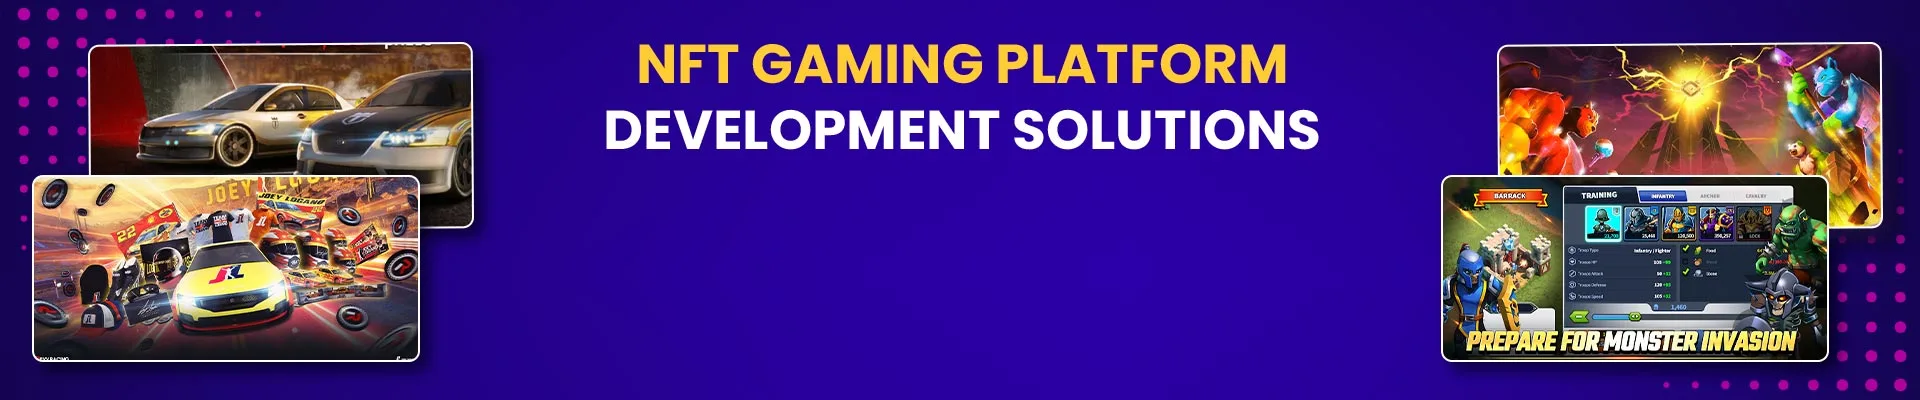 Best NFT Gaming Platform Development Solutions | Hire NFT Game Developers